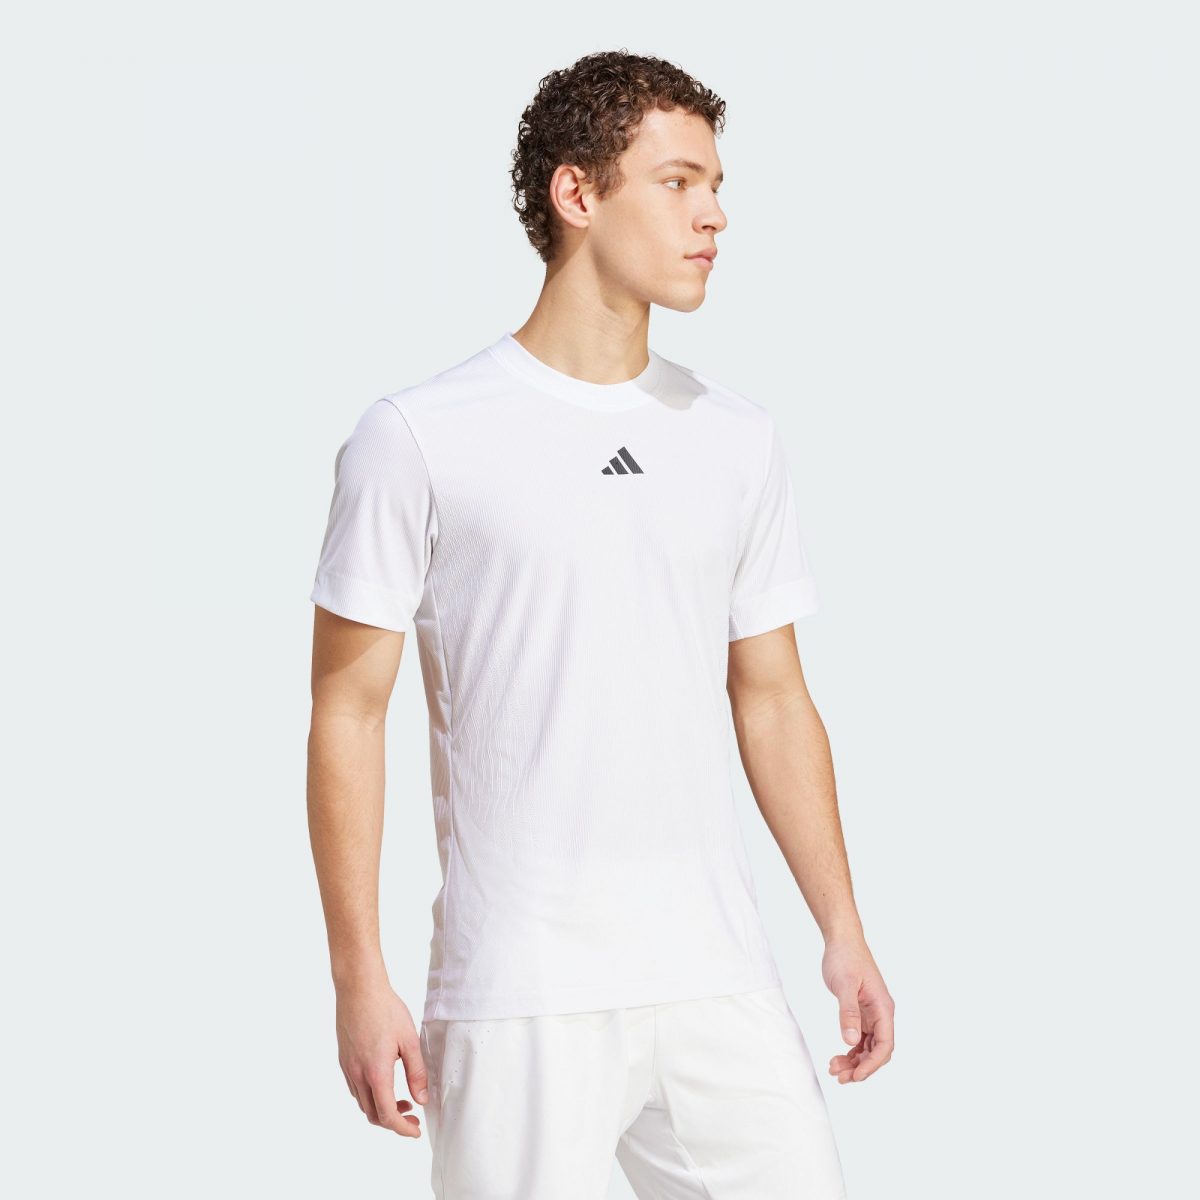 Мужская футболка adidas TENNIS PRO AIRCHILL T-SHIRT